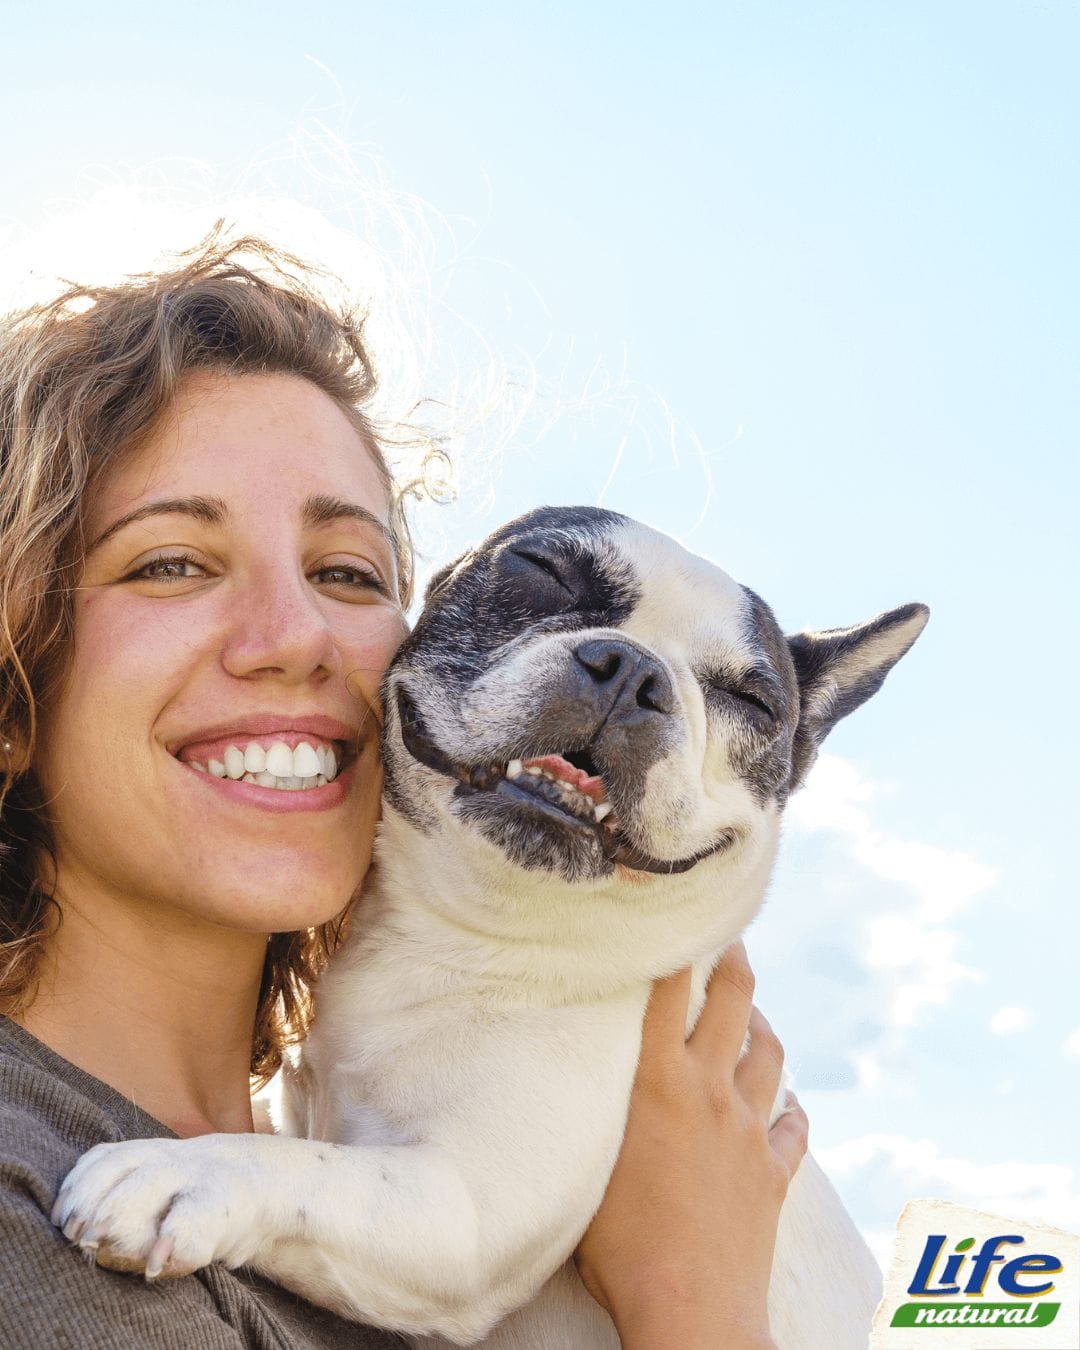 5 consigli per educare il cane - donna felice con cane educato e allegro